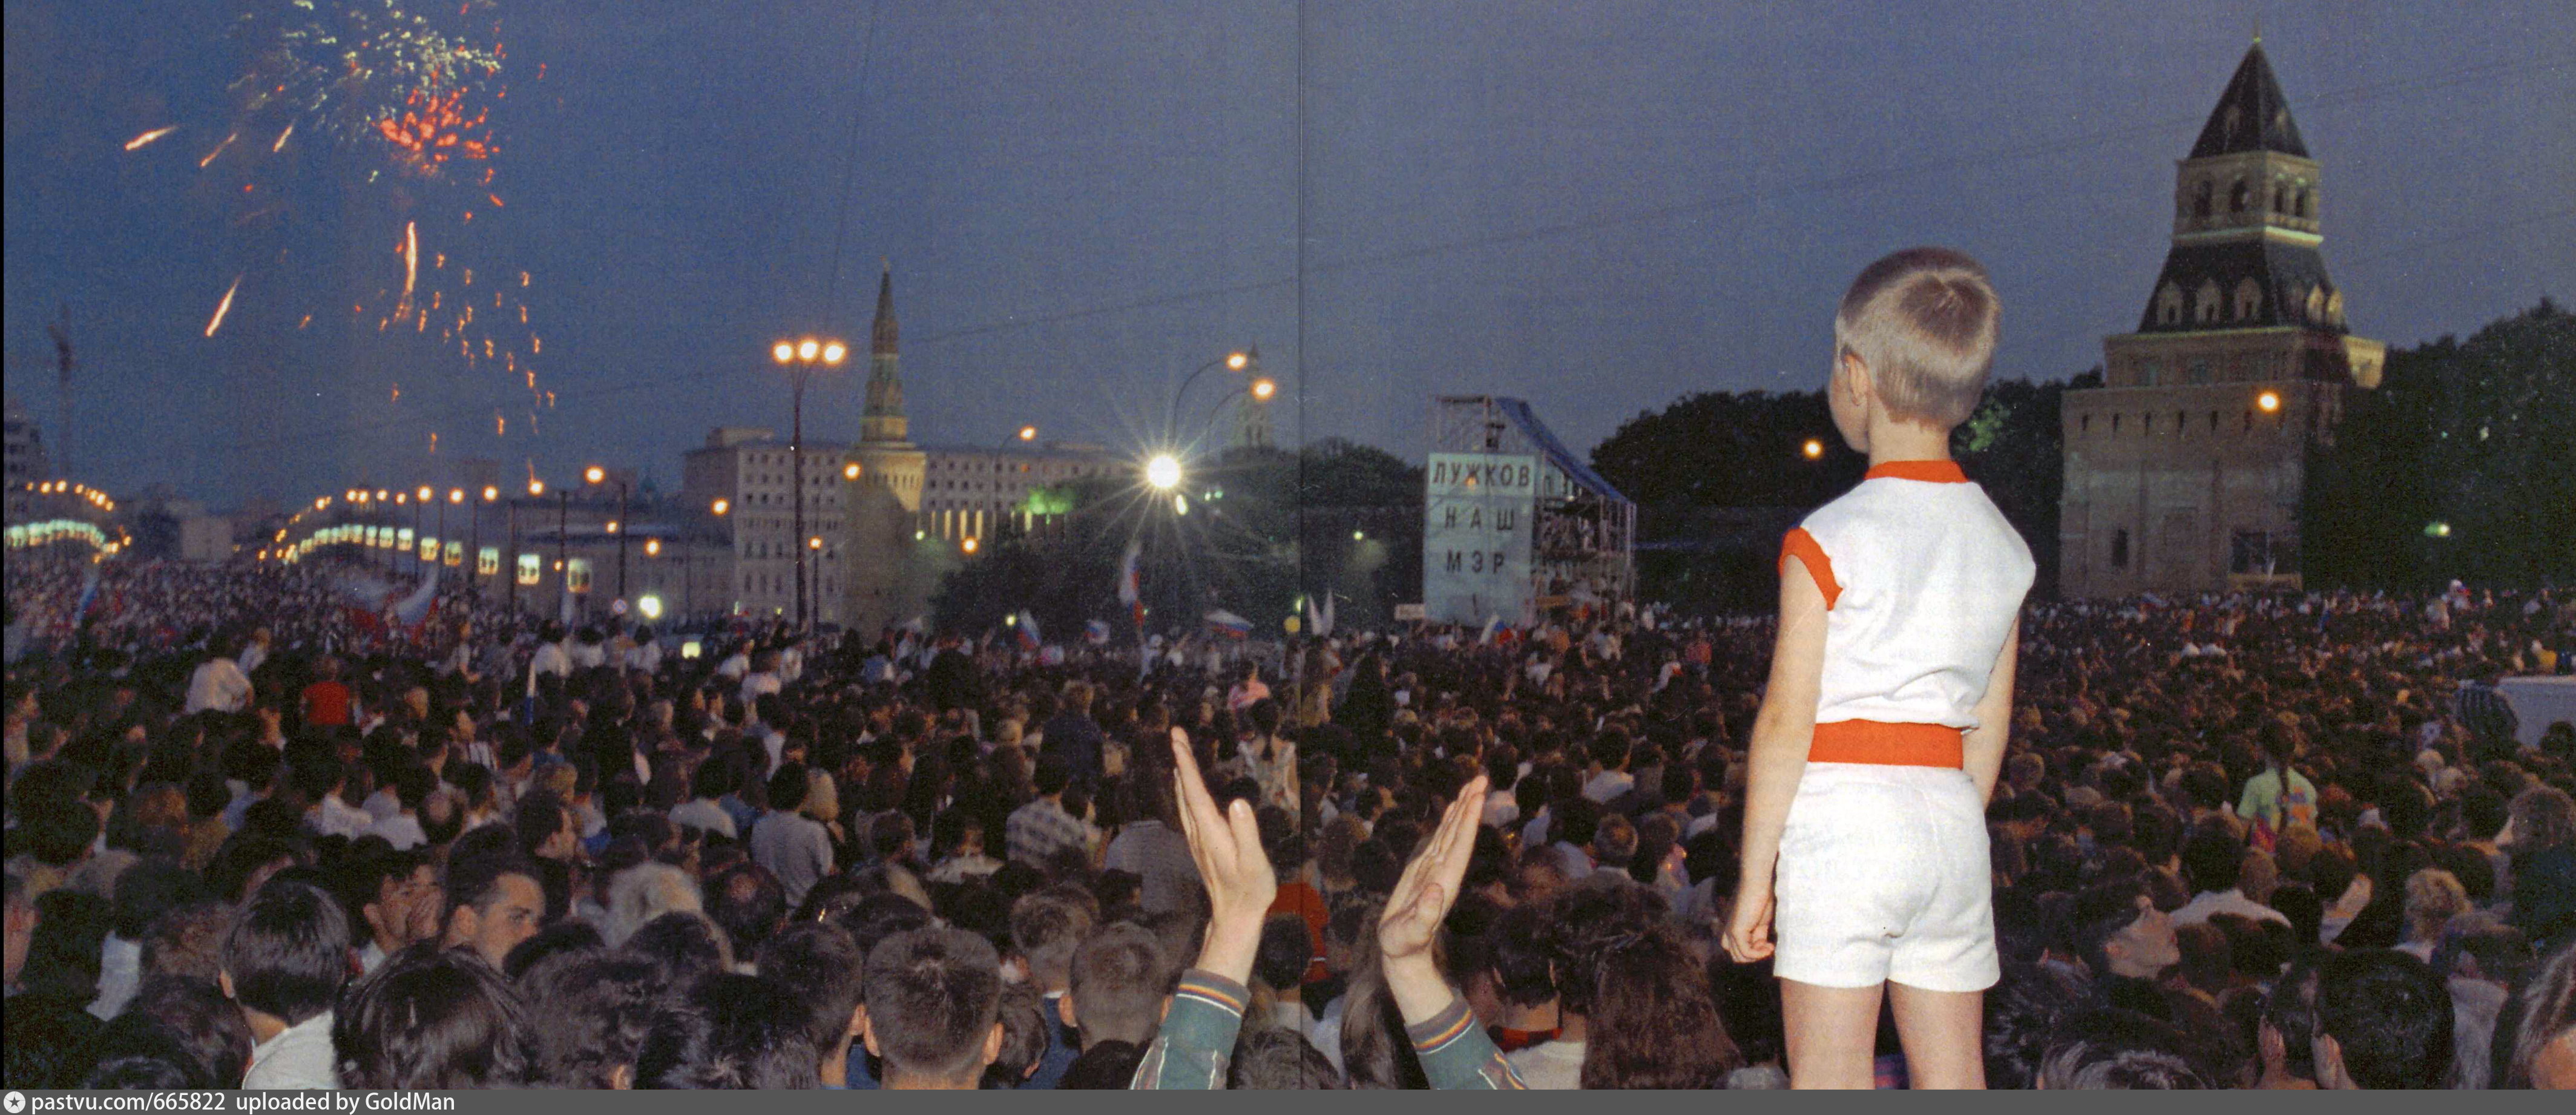 1 июня 1996. Ельцин митинг 1990. Ельцин 12 июня 1990. Концерт 1996 года на красной площади в поддержку Ельцина. Концерт в поддержку Ельцина 1996.